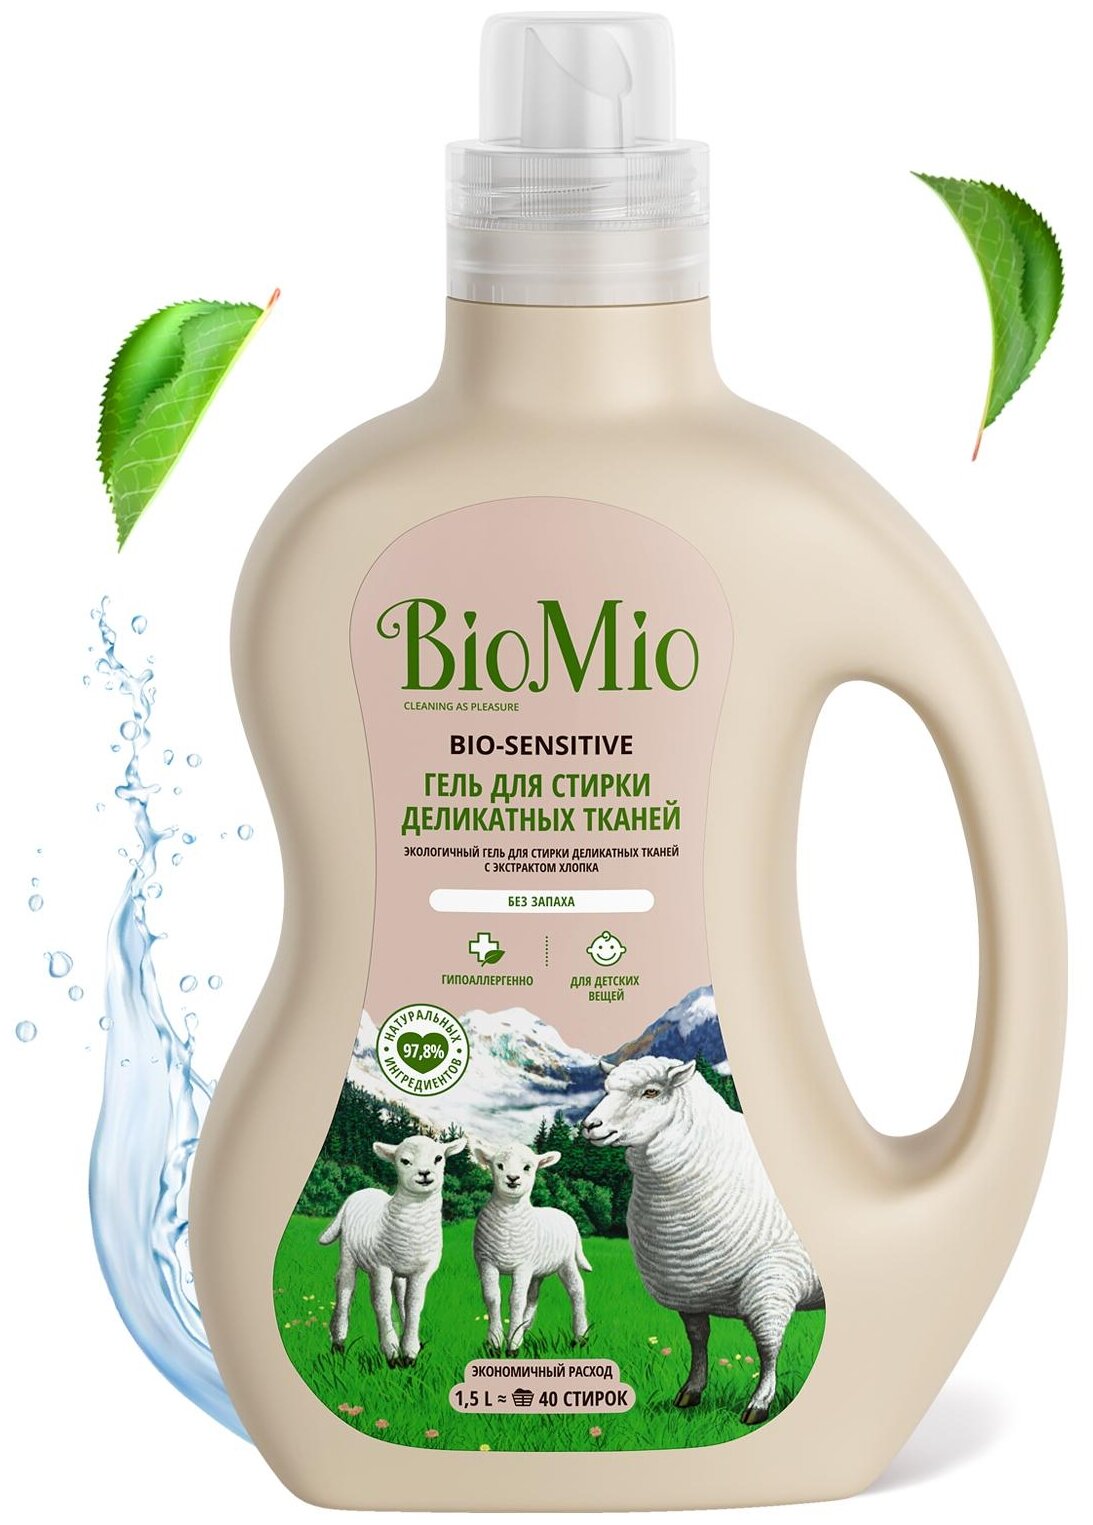 BioMio. BIO-SENSITIVE Экологичный гель для стирки деликатных тканей. Без запаха 1500 мл.